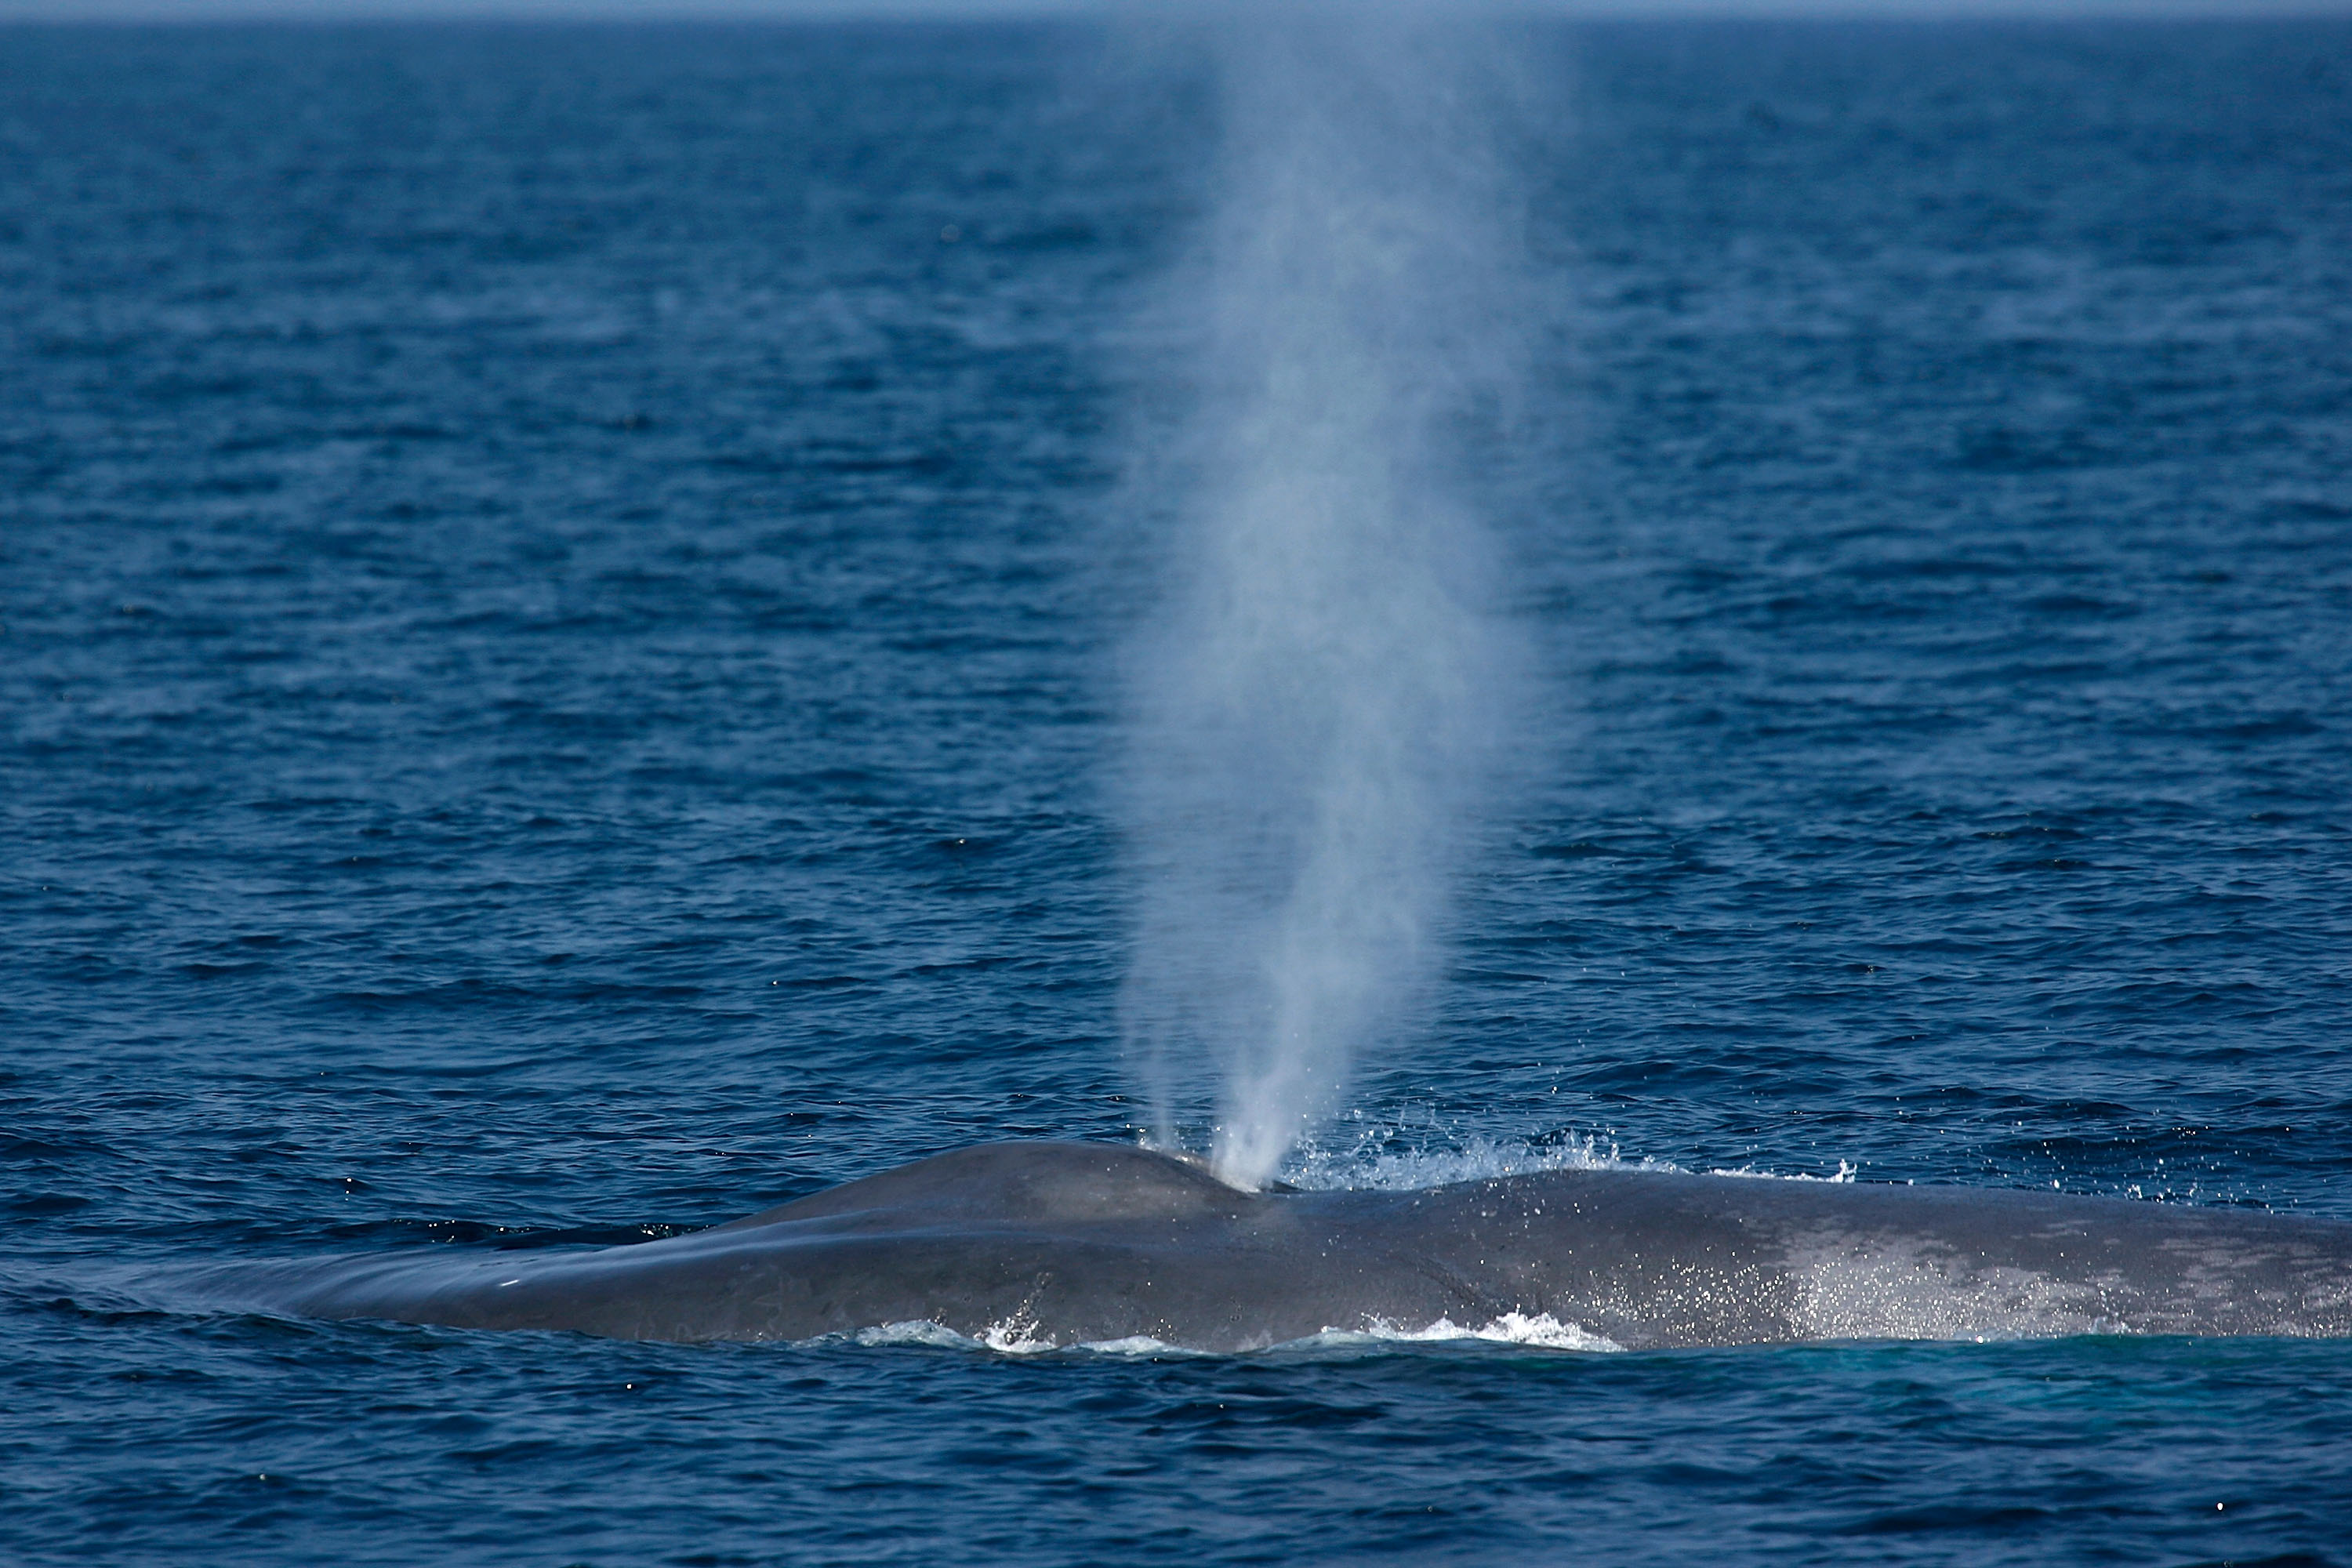 blue whales breach off california coast